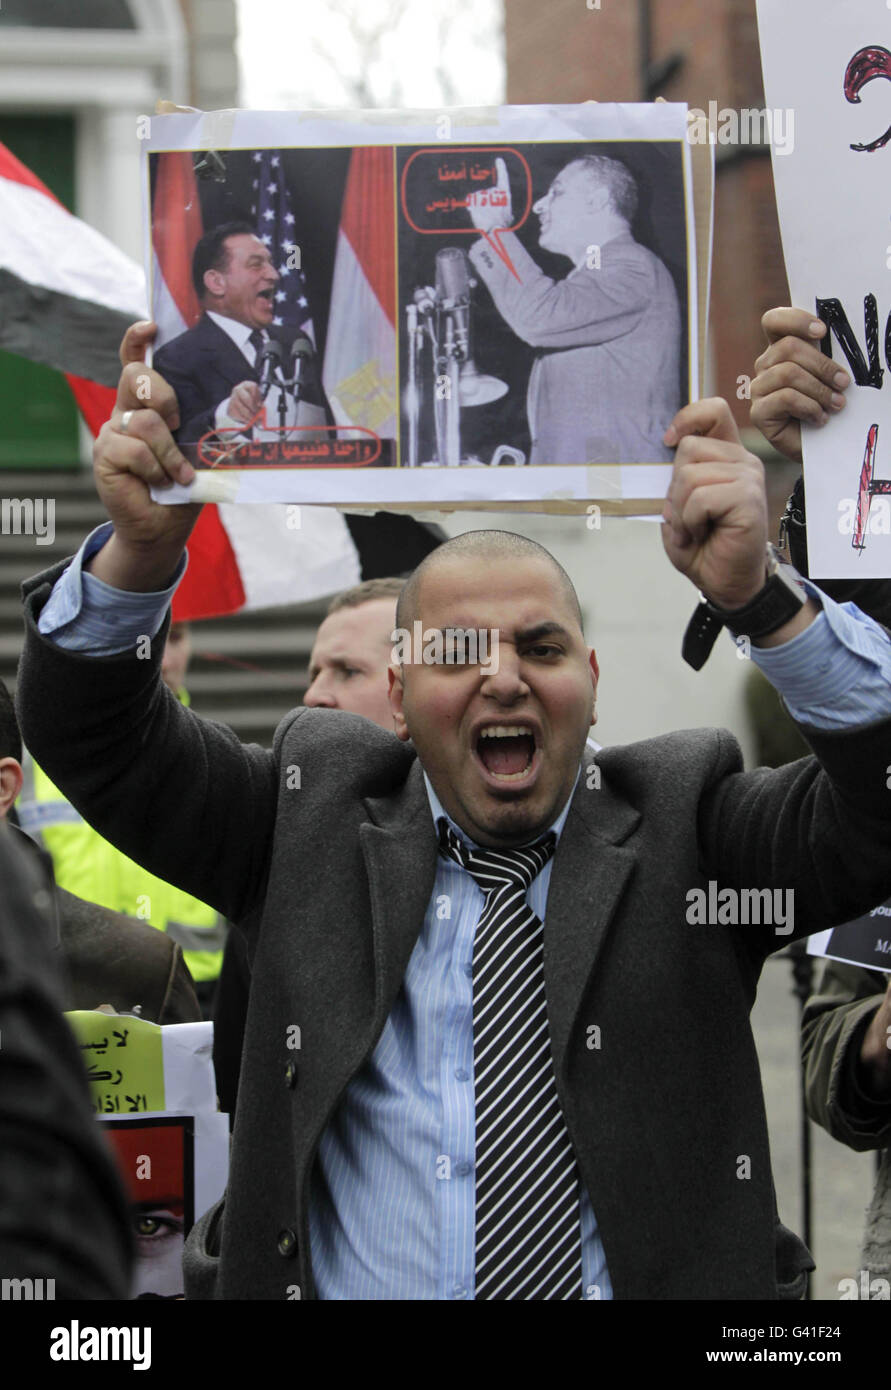 Les manifestants se rassemblent devant l'ambassade d'Égypte à Dublin, pour manifester leur solidarité avec des milliers d'activistes anti-gouvernementaux au Caire et dans d'autres villes. Banque D'Images